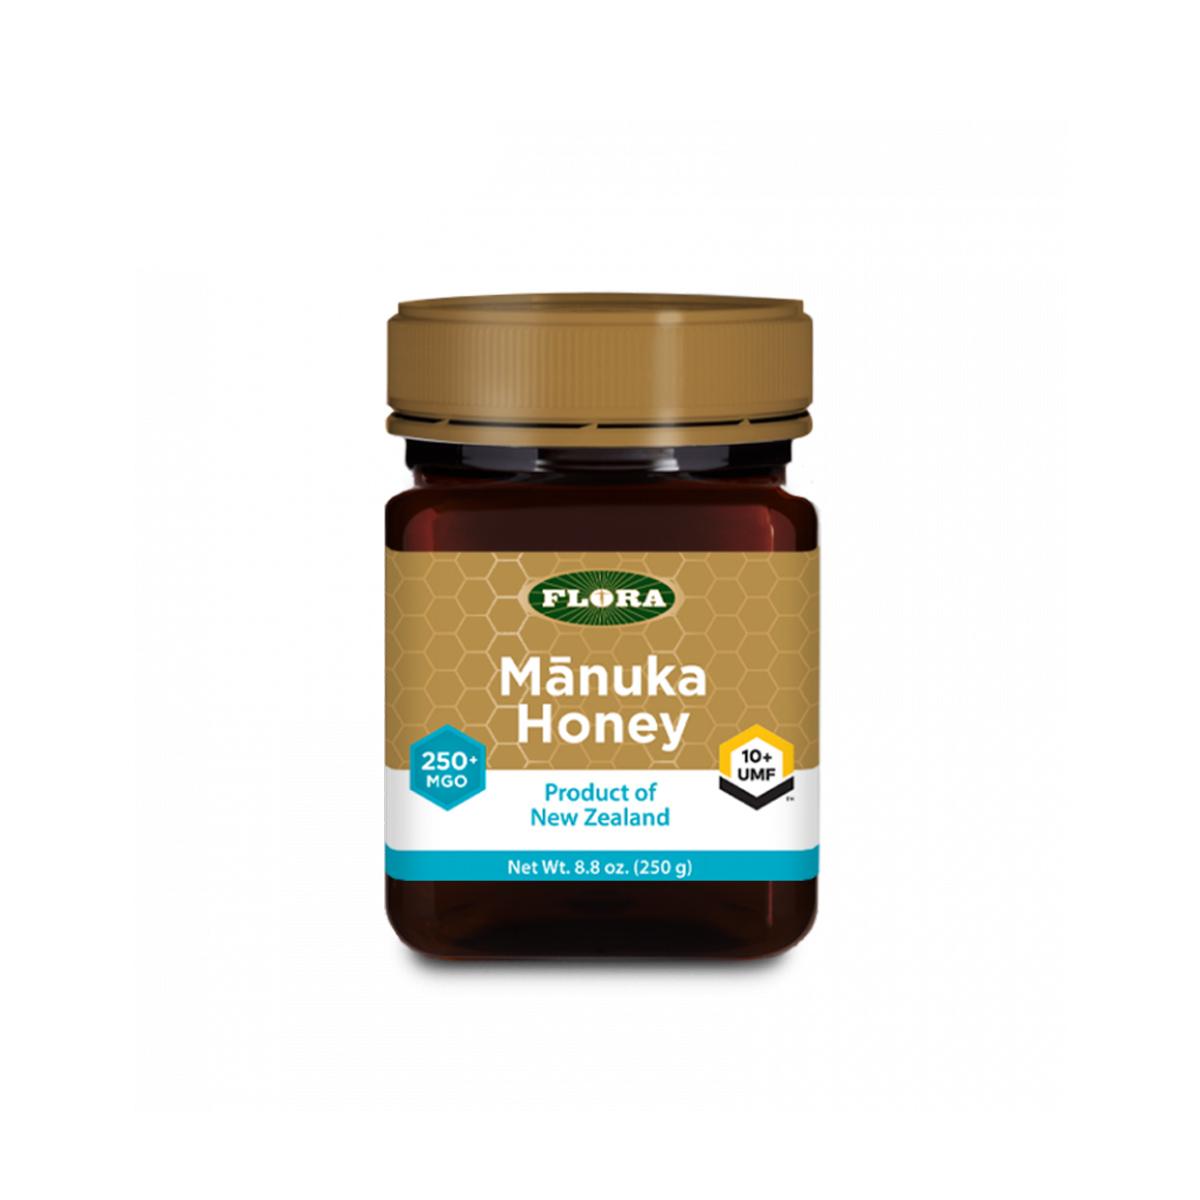 Primary image of Manuka Honey MGO 250+/10+ UMF